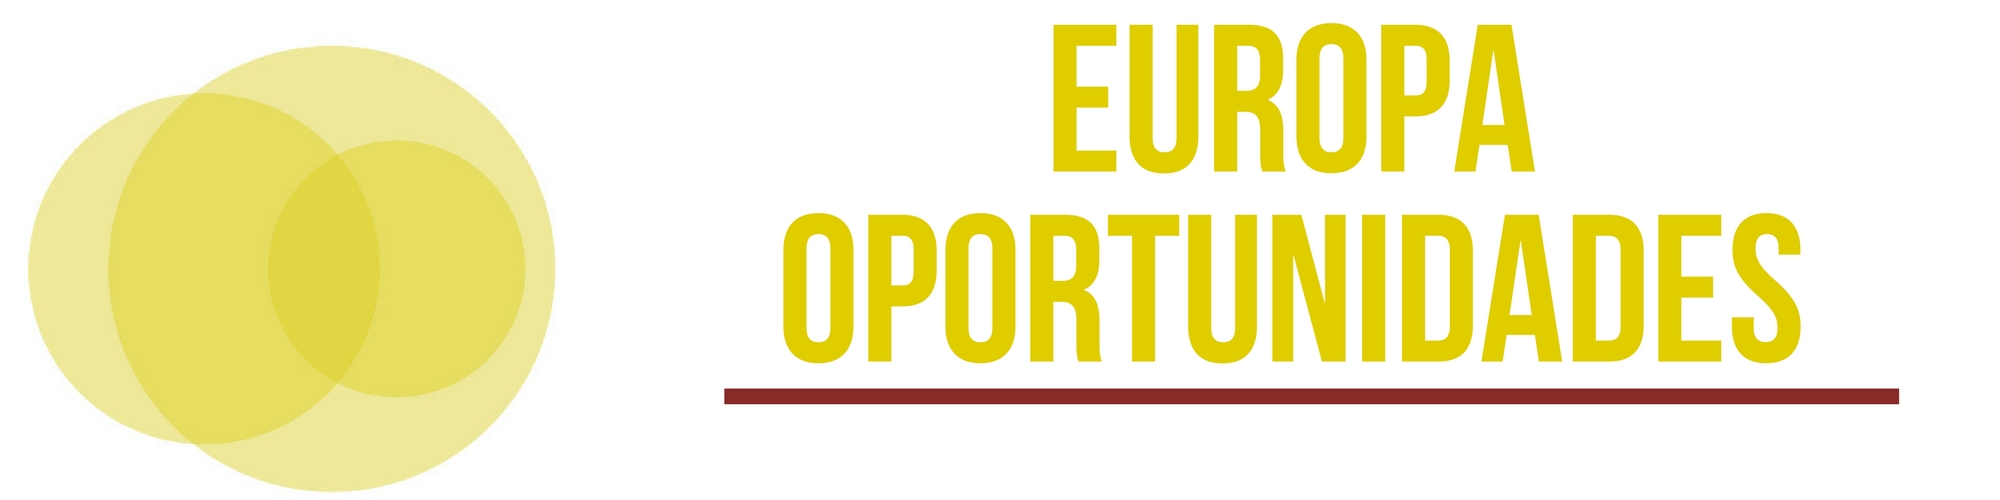 boton europa oportunidades[;;;][;;;]